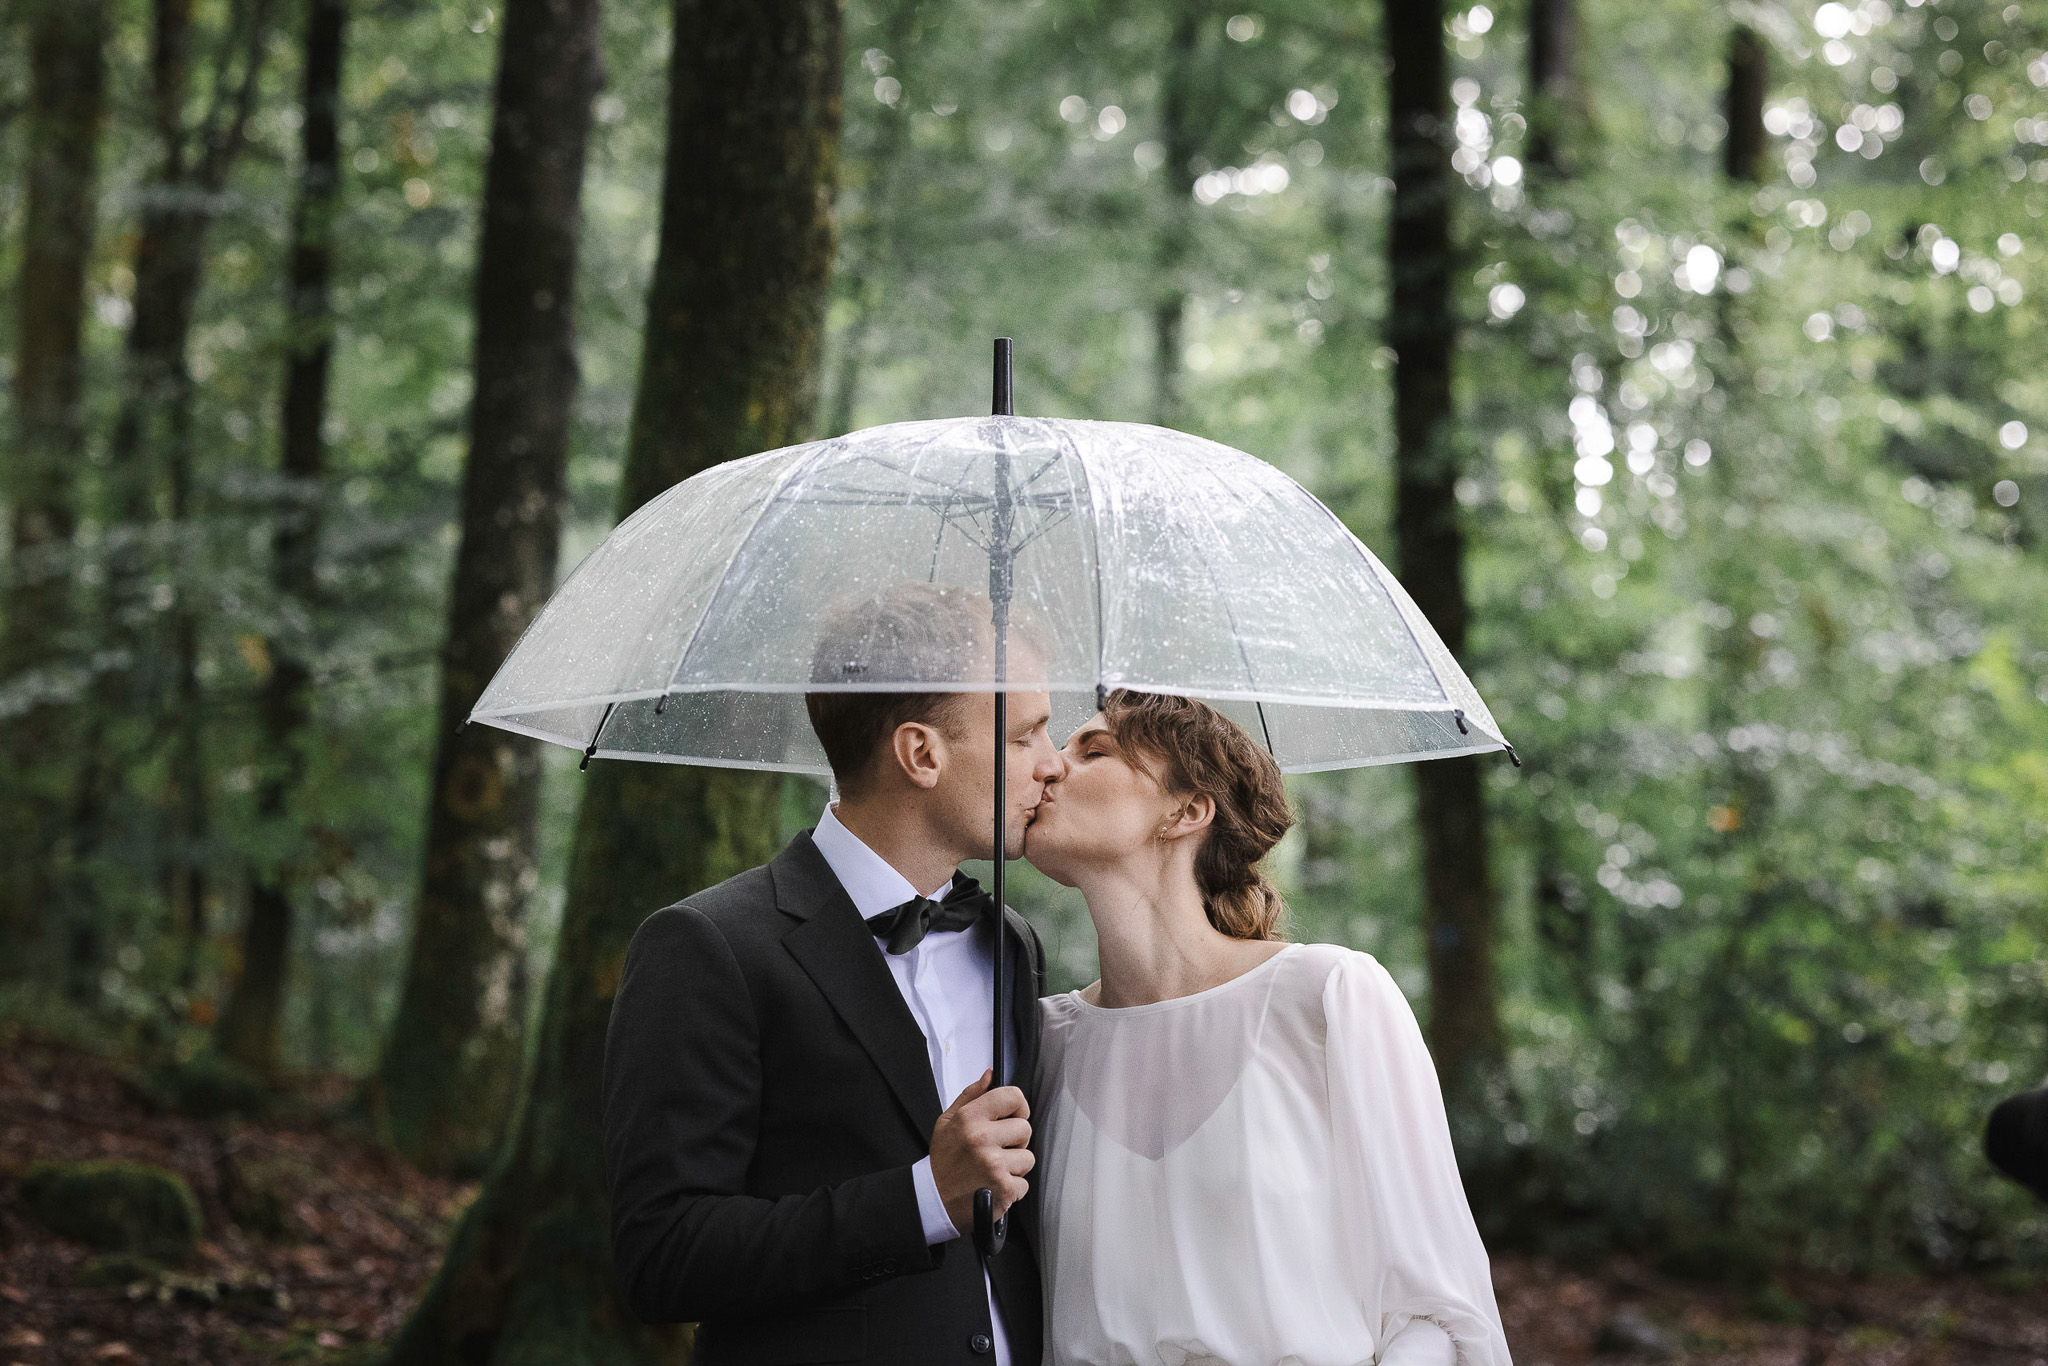 Brud och brudgum under paraply - bröllopsfotografering